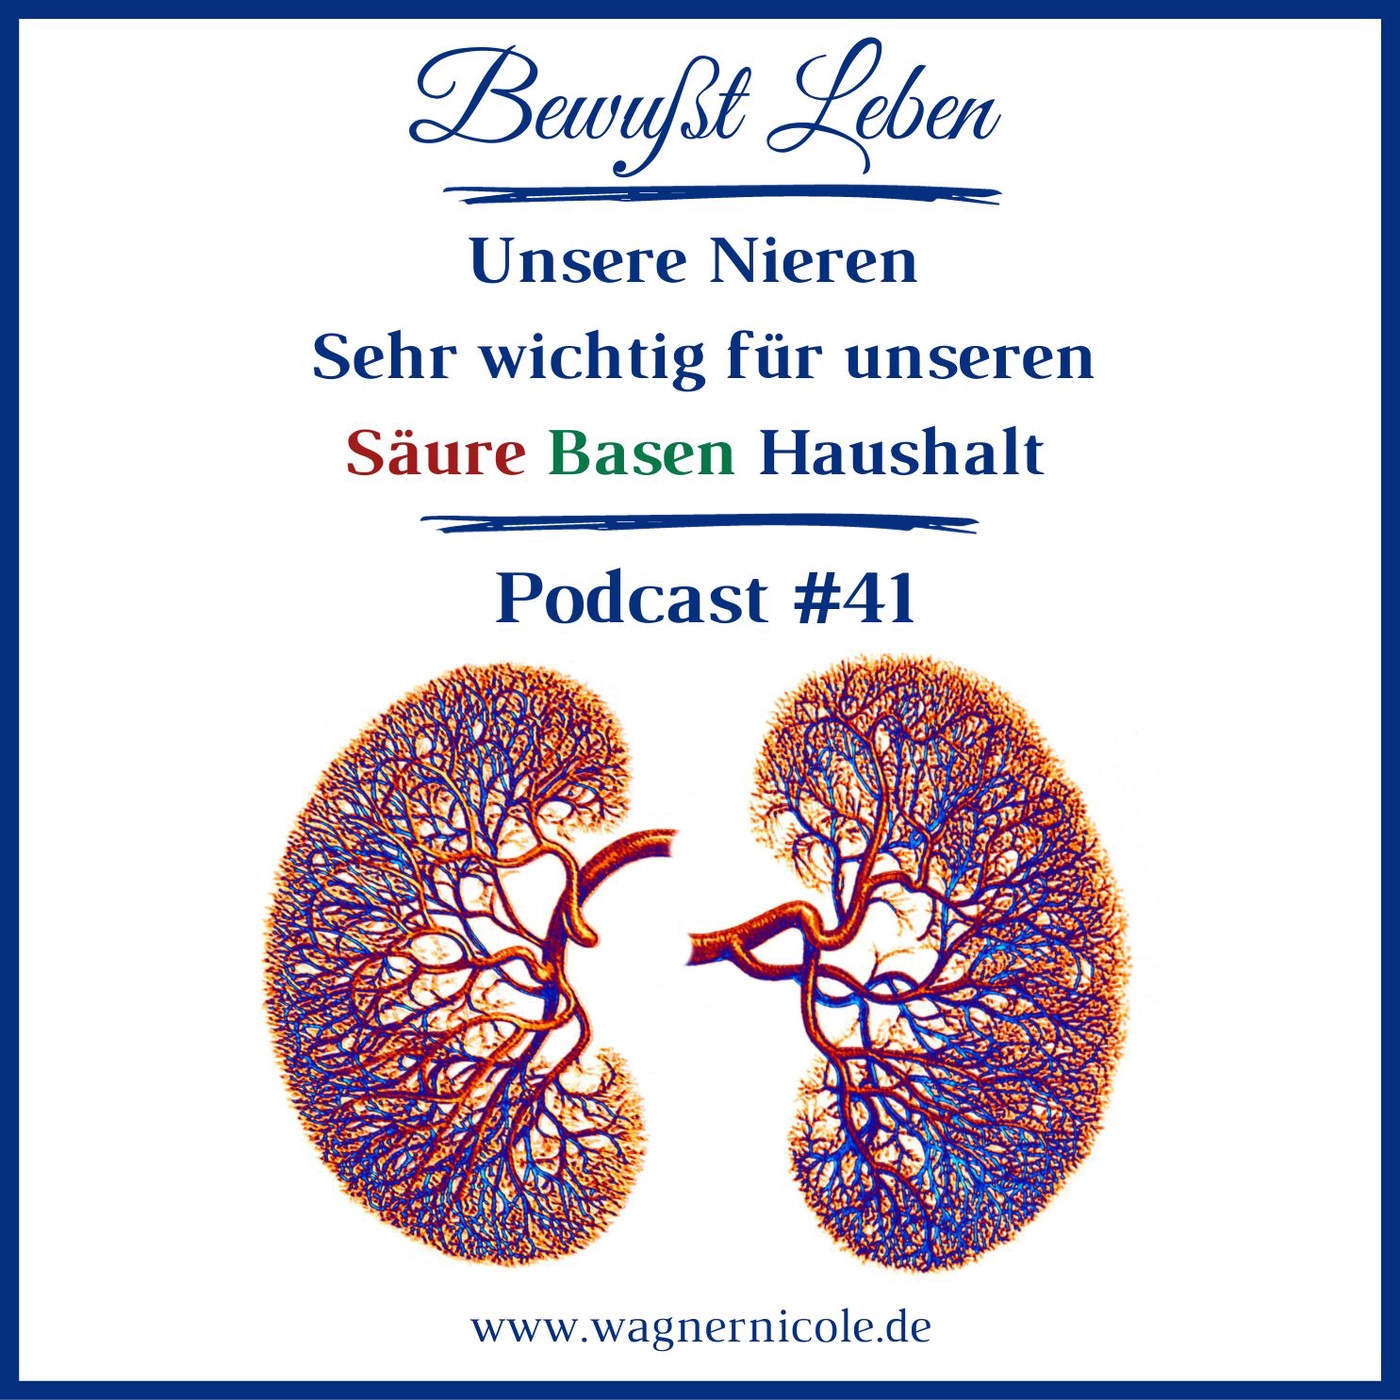 Unsere Nieren I Sehr wichtig für unseren Säure Basen Haushalt I Podcast #41